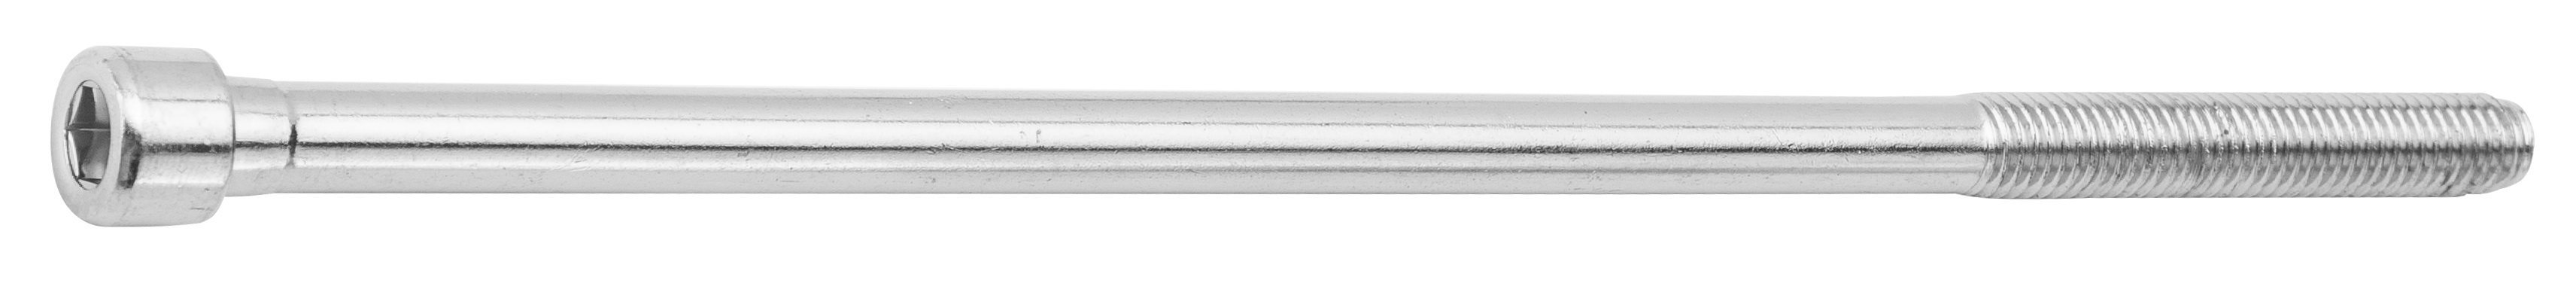 Болт выноса руля сталь (без гайки), 210 мм, под шестигранник